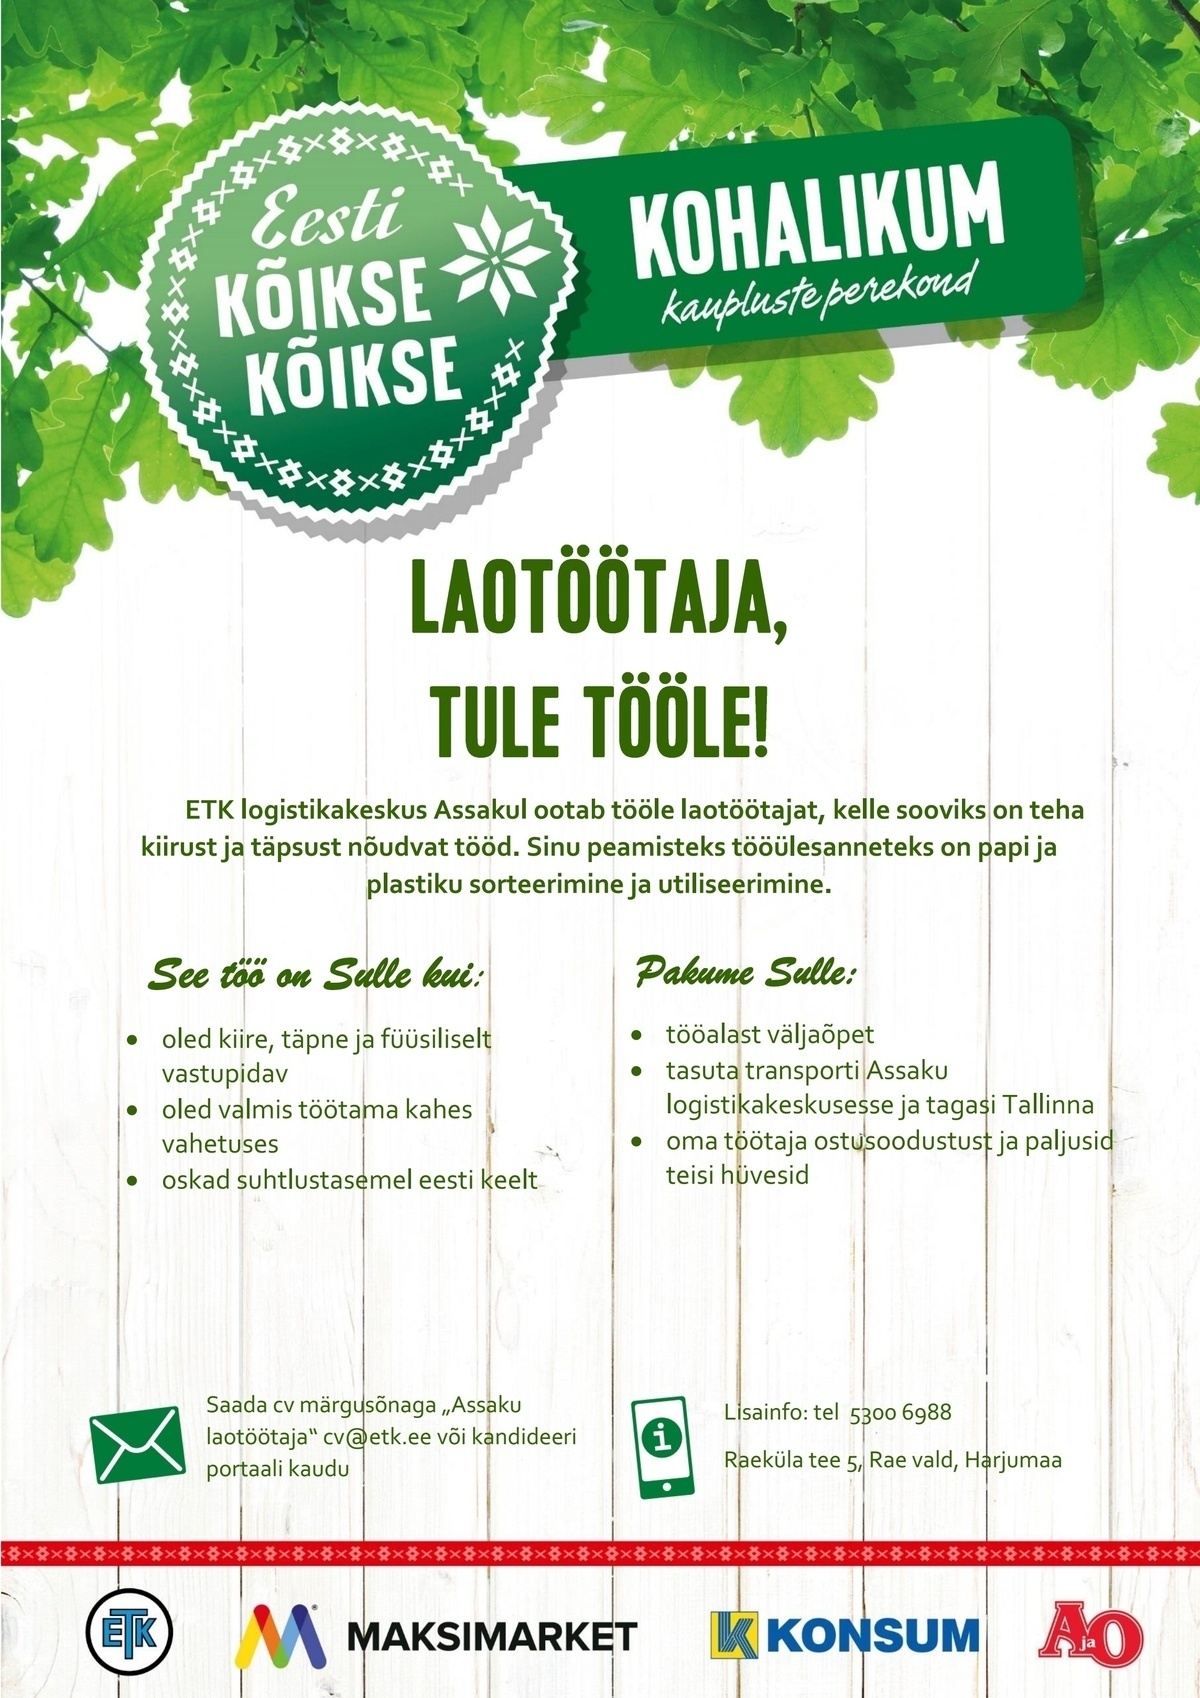 Eesti Tarbijateühistute Keskühistu Laotöötaja (Assaku Logistikakeskus)